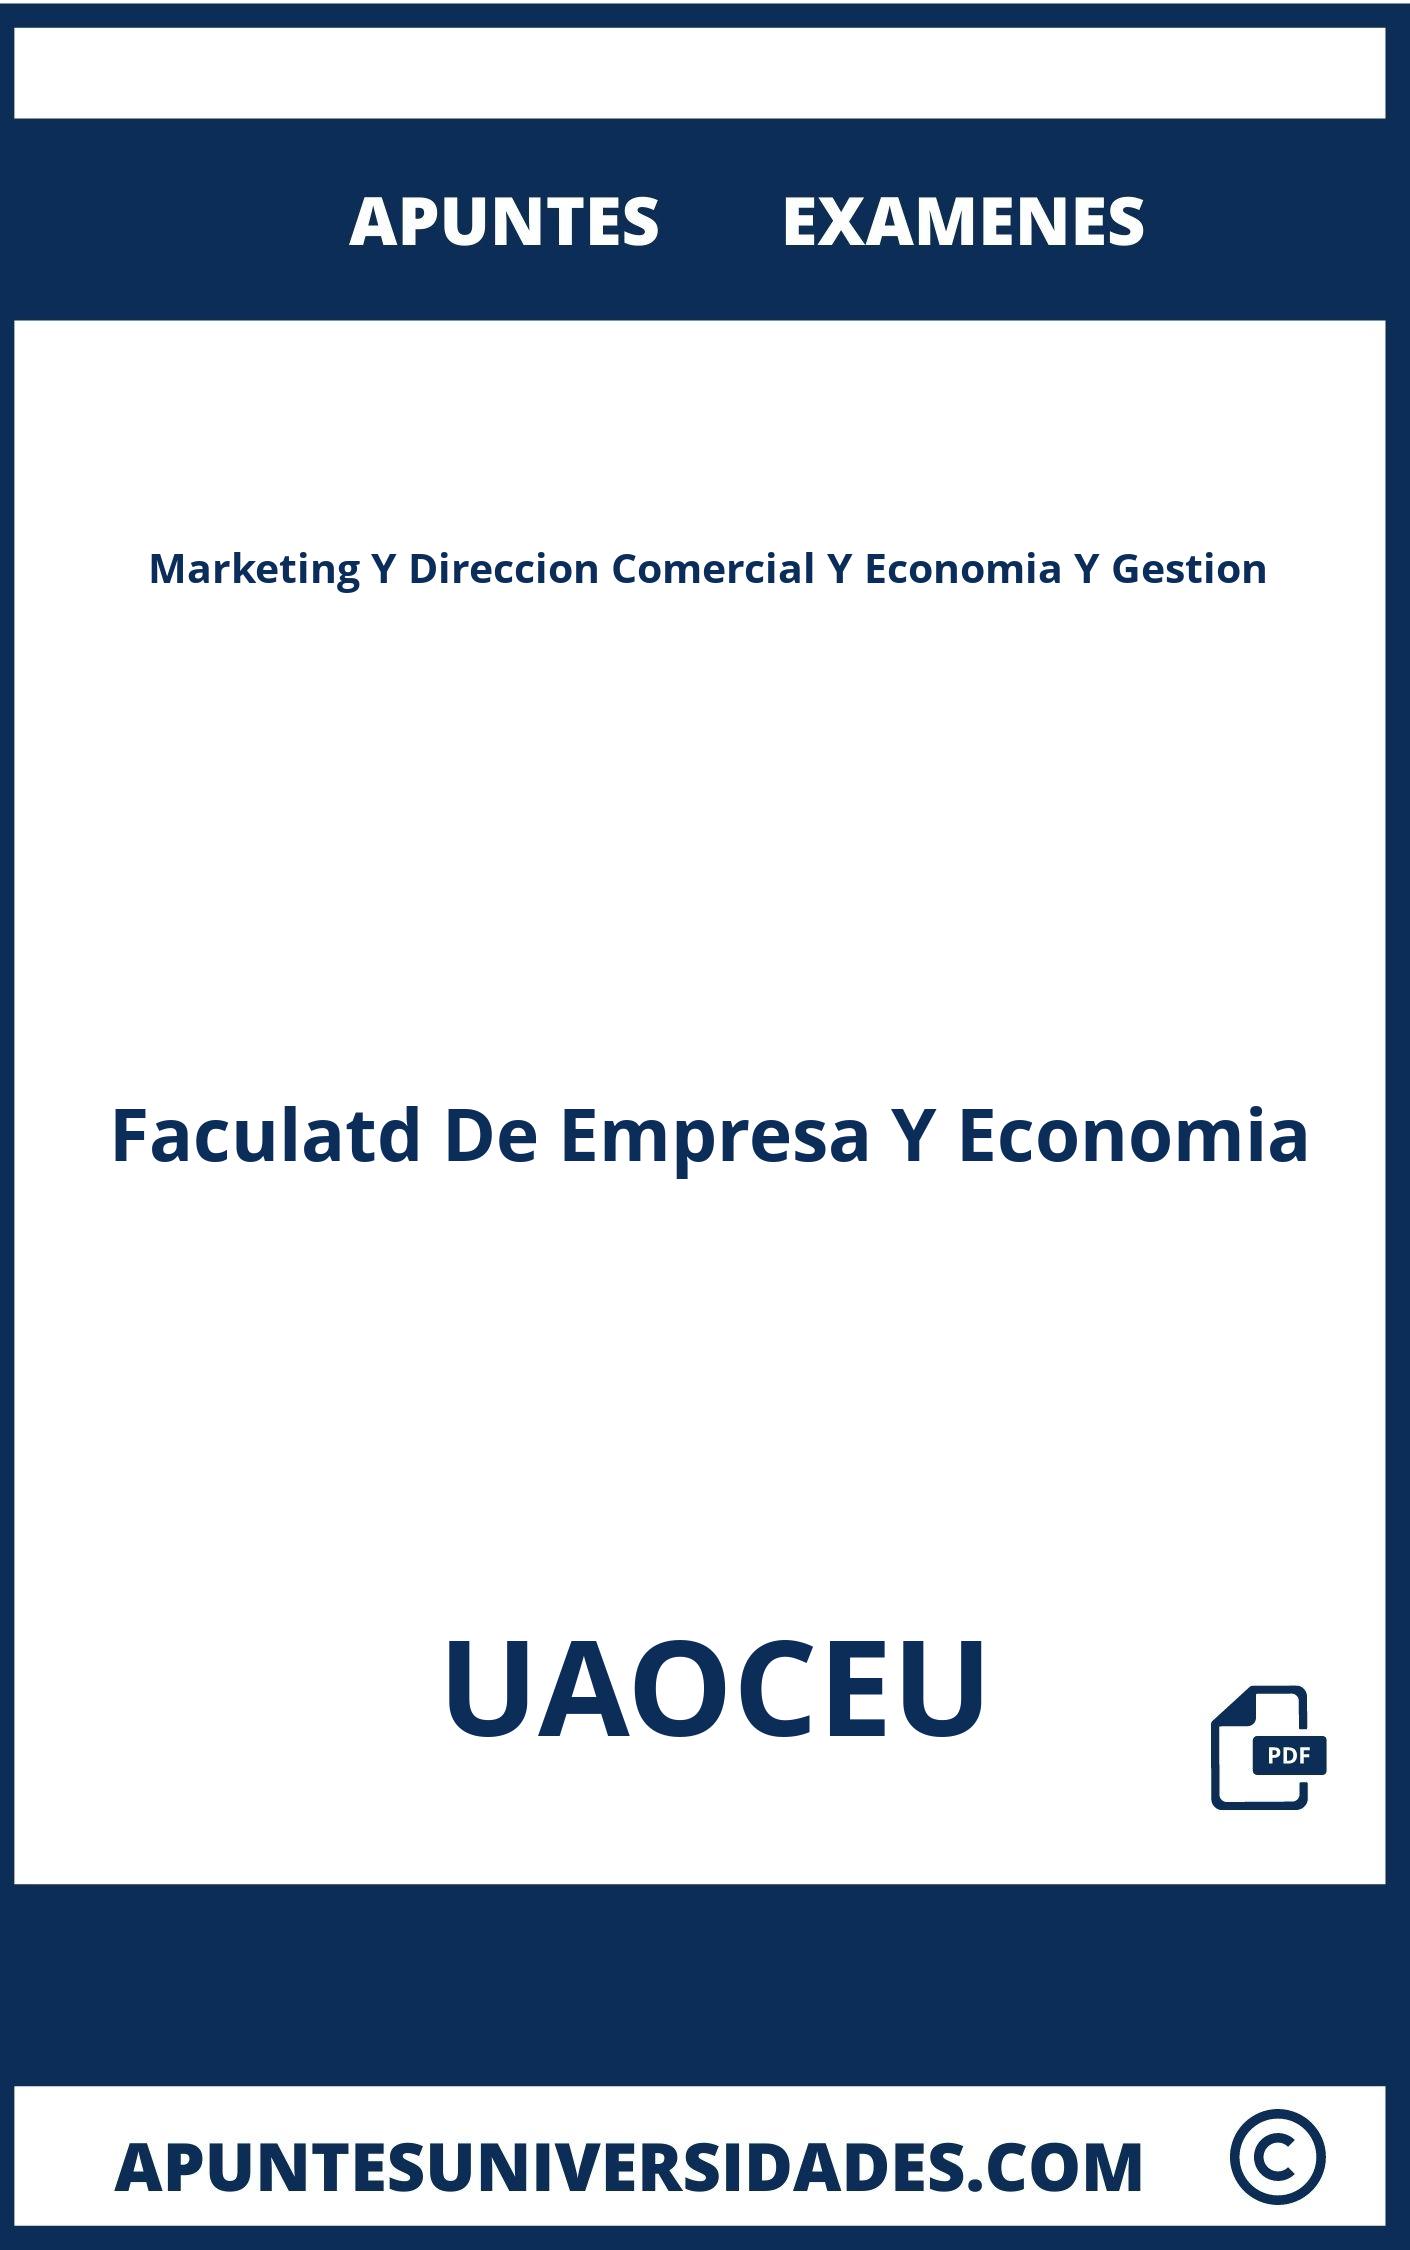 Examenes y Apuntes de Marketing Y Direccion Comercial Y Economia Y Gestion UAOCEU